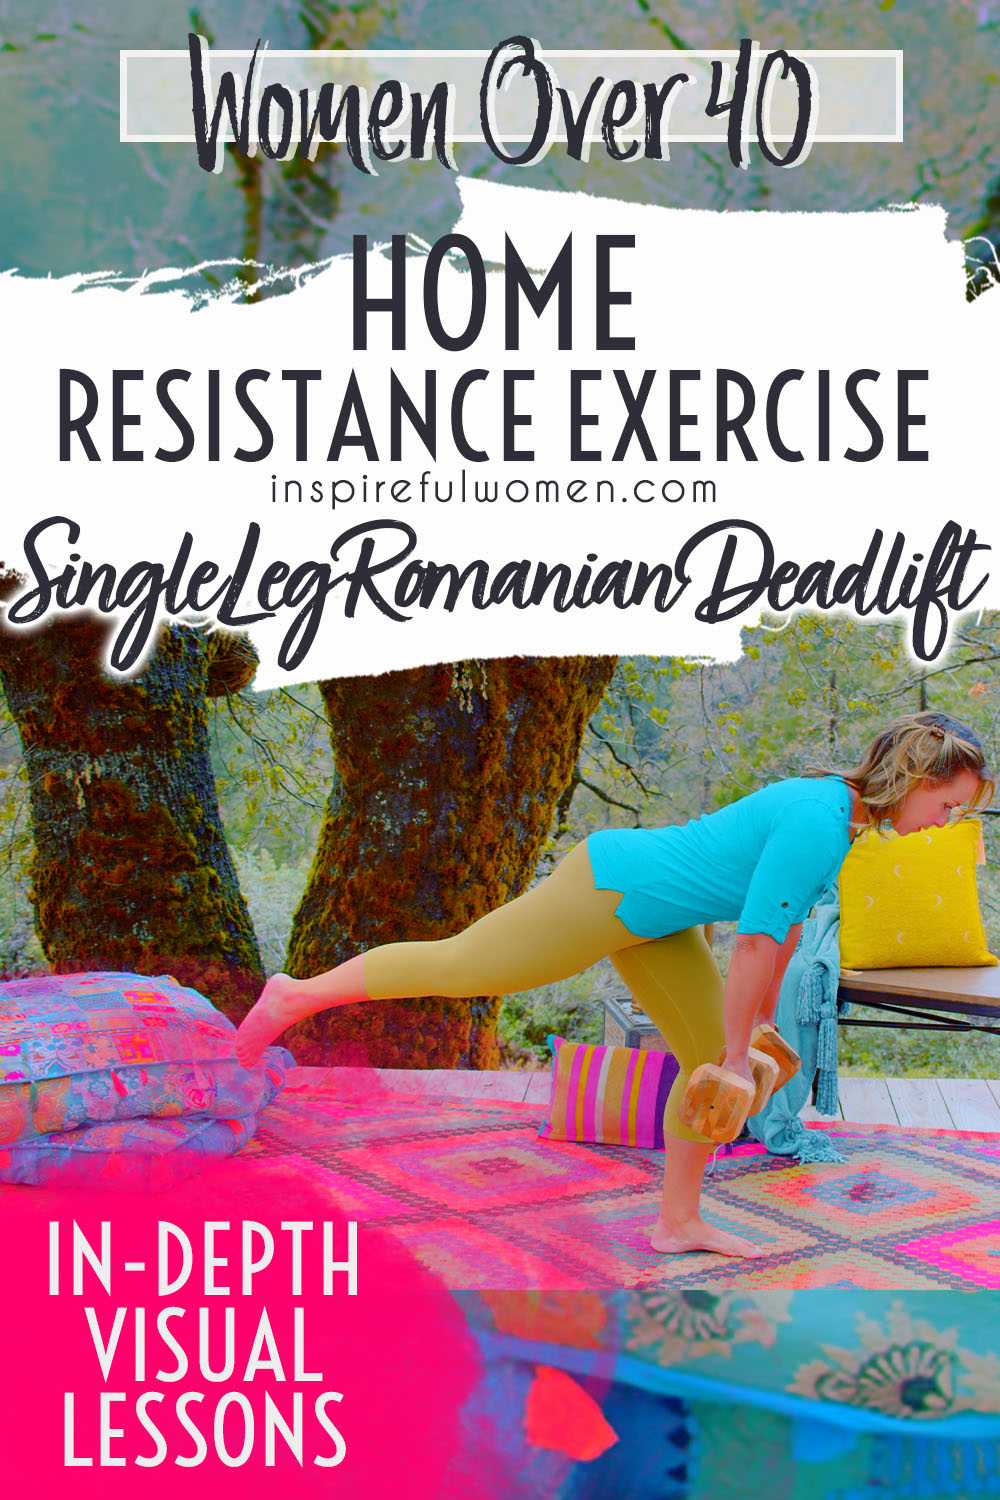 single-leg-romanian-deadlift-dumbbell-glutes-hamstring-strengthening-exercise-women-40-plus